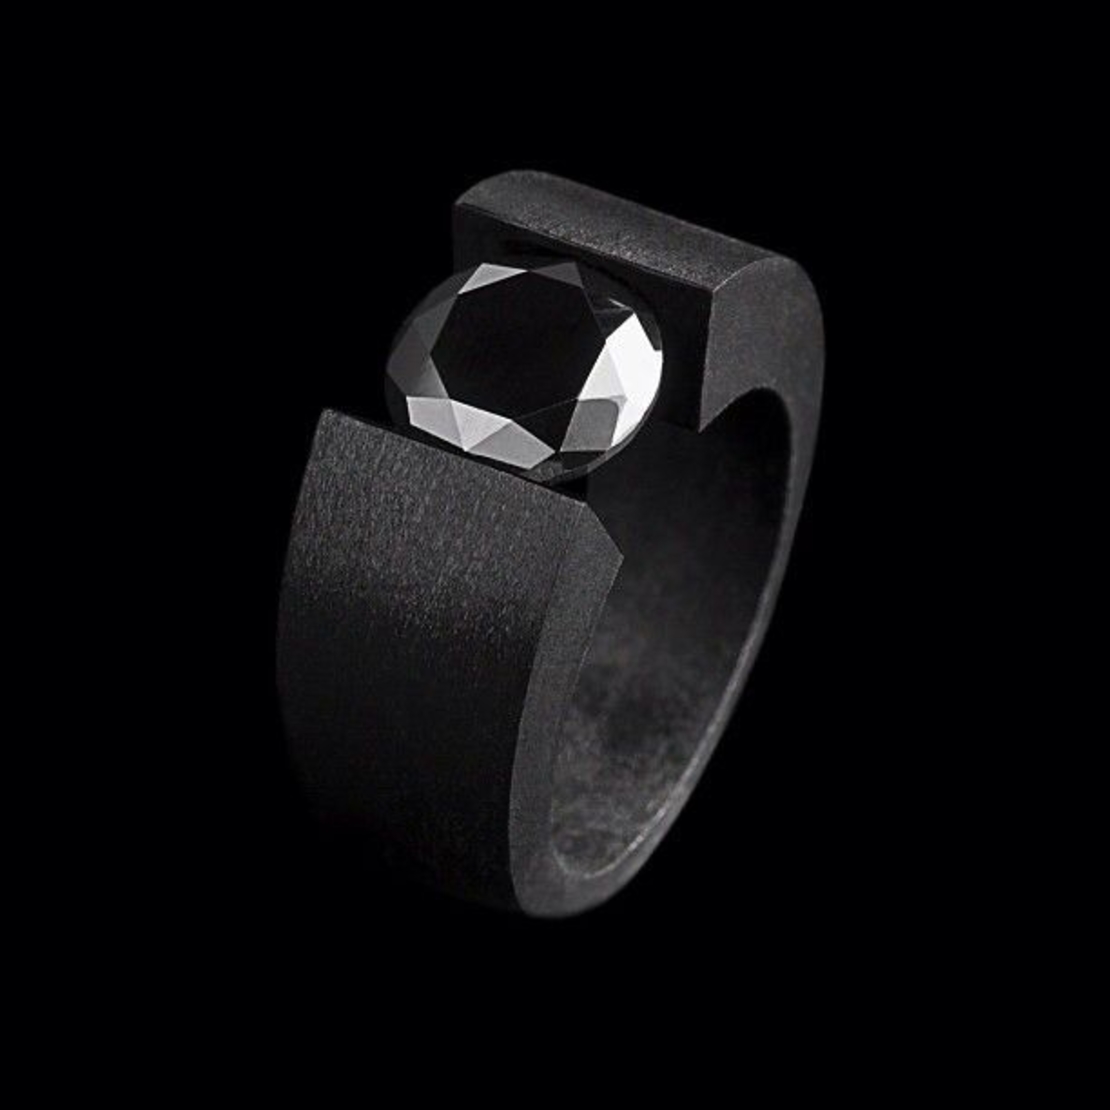 Мужское кольцо с черным бриллиантом